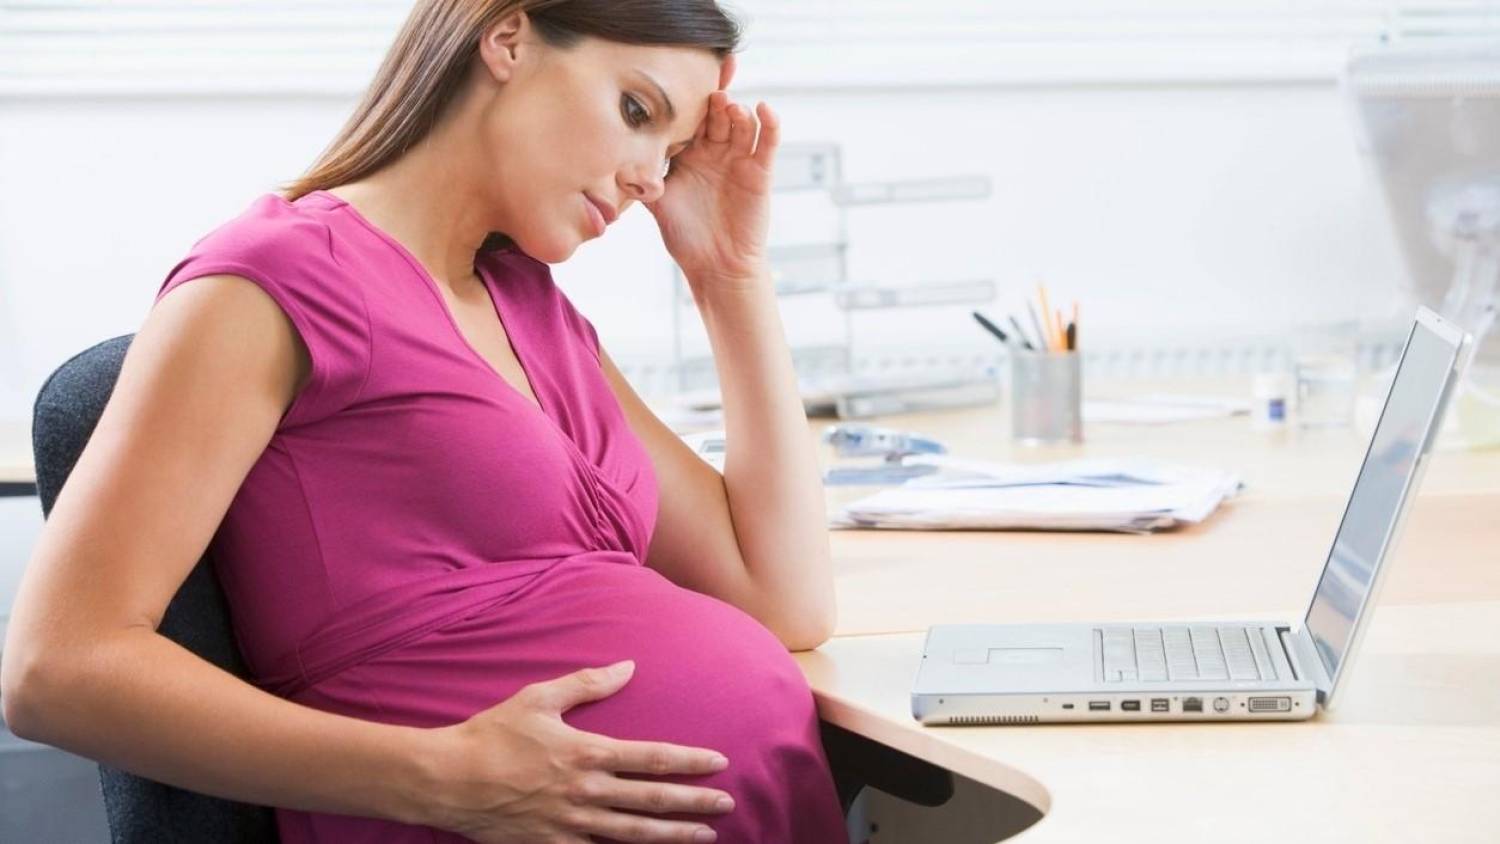 Mulheres relatam pressão no trabalho após gravidez